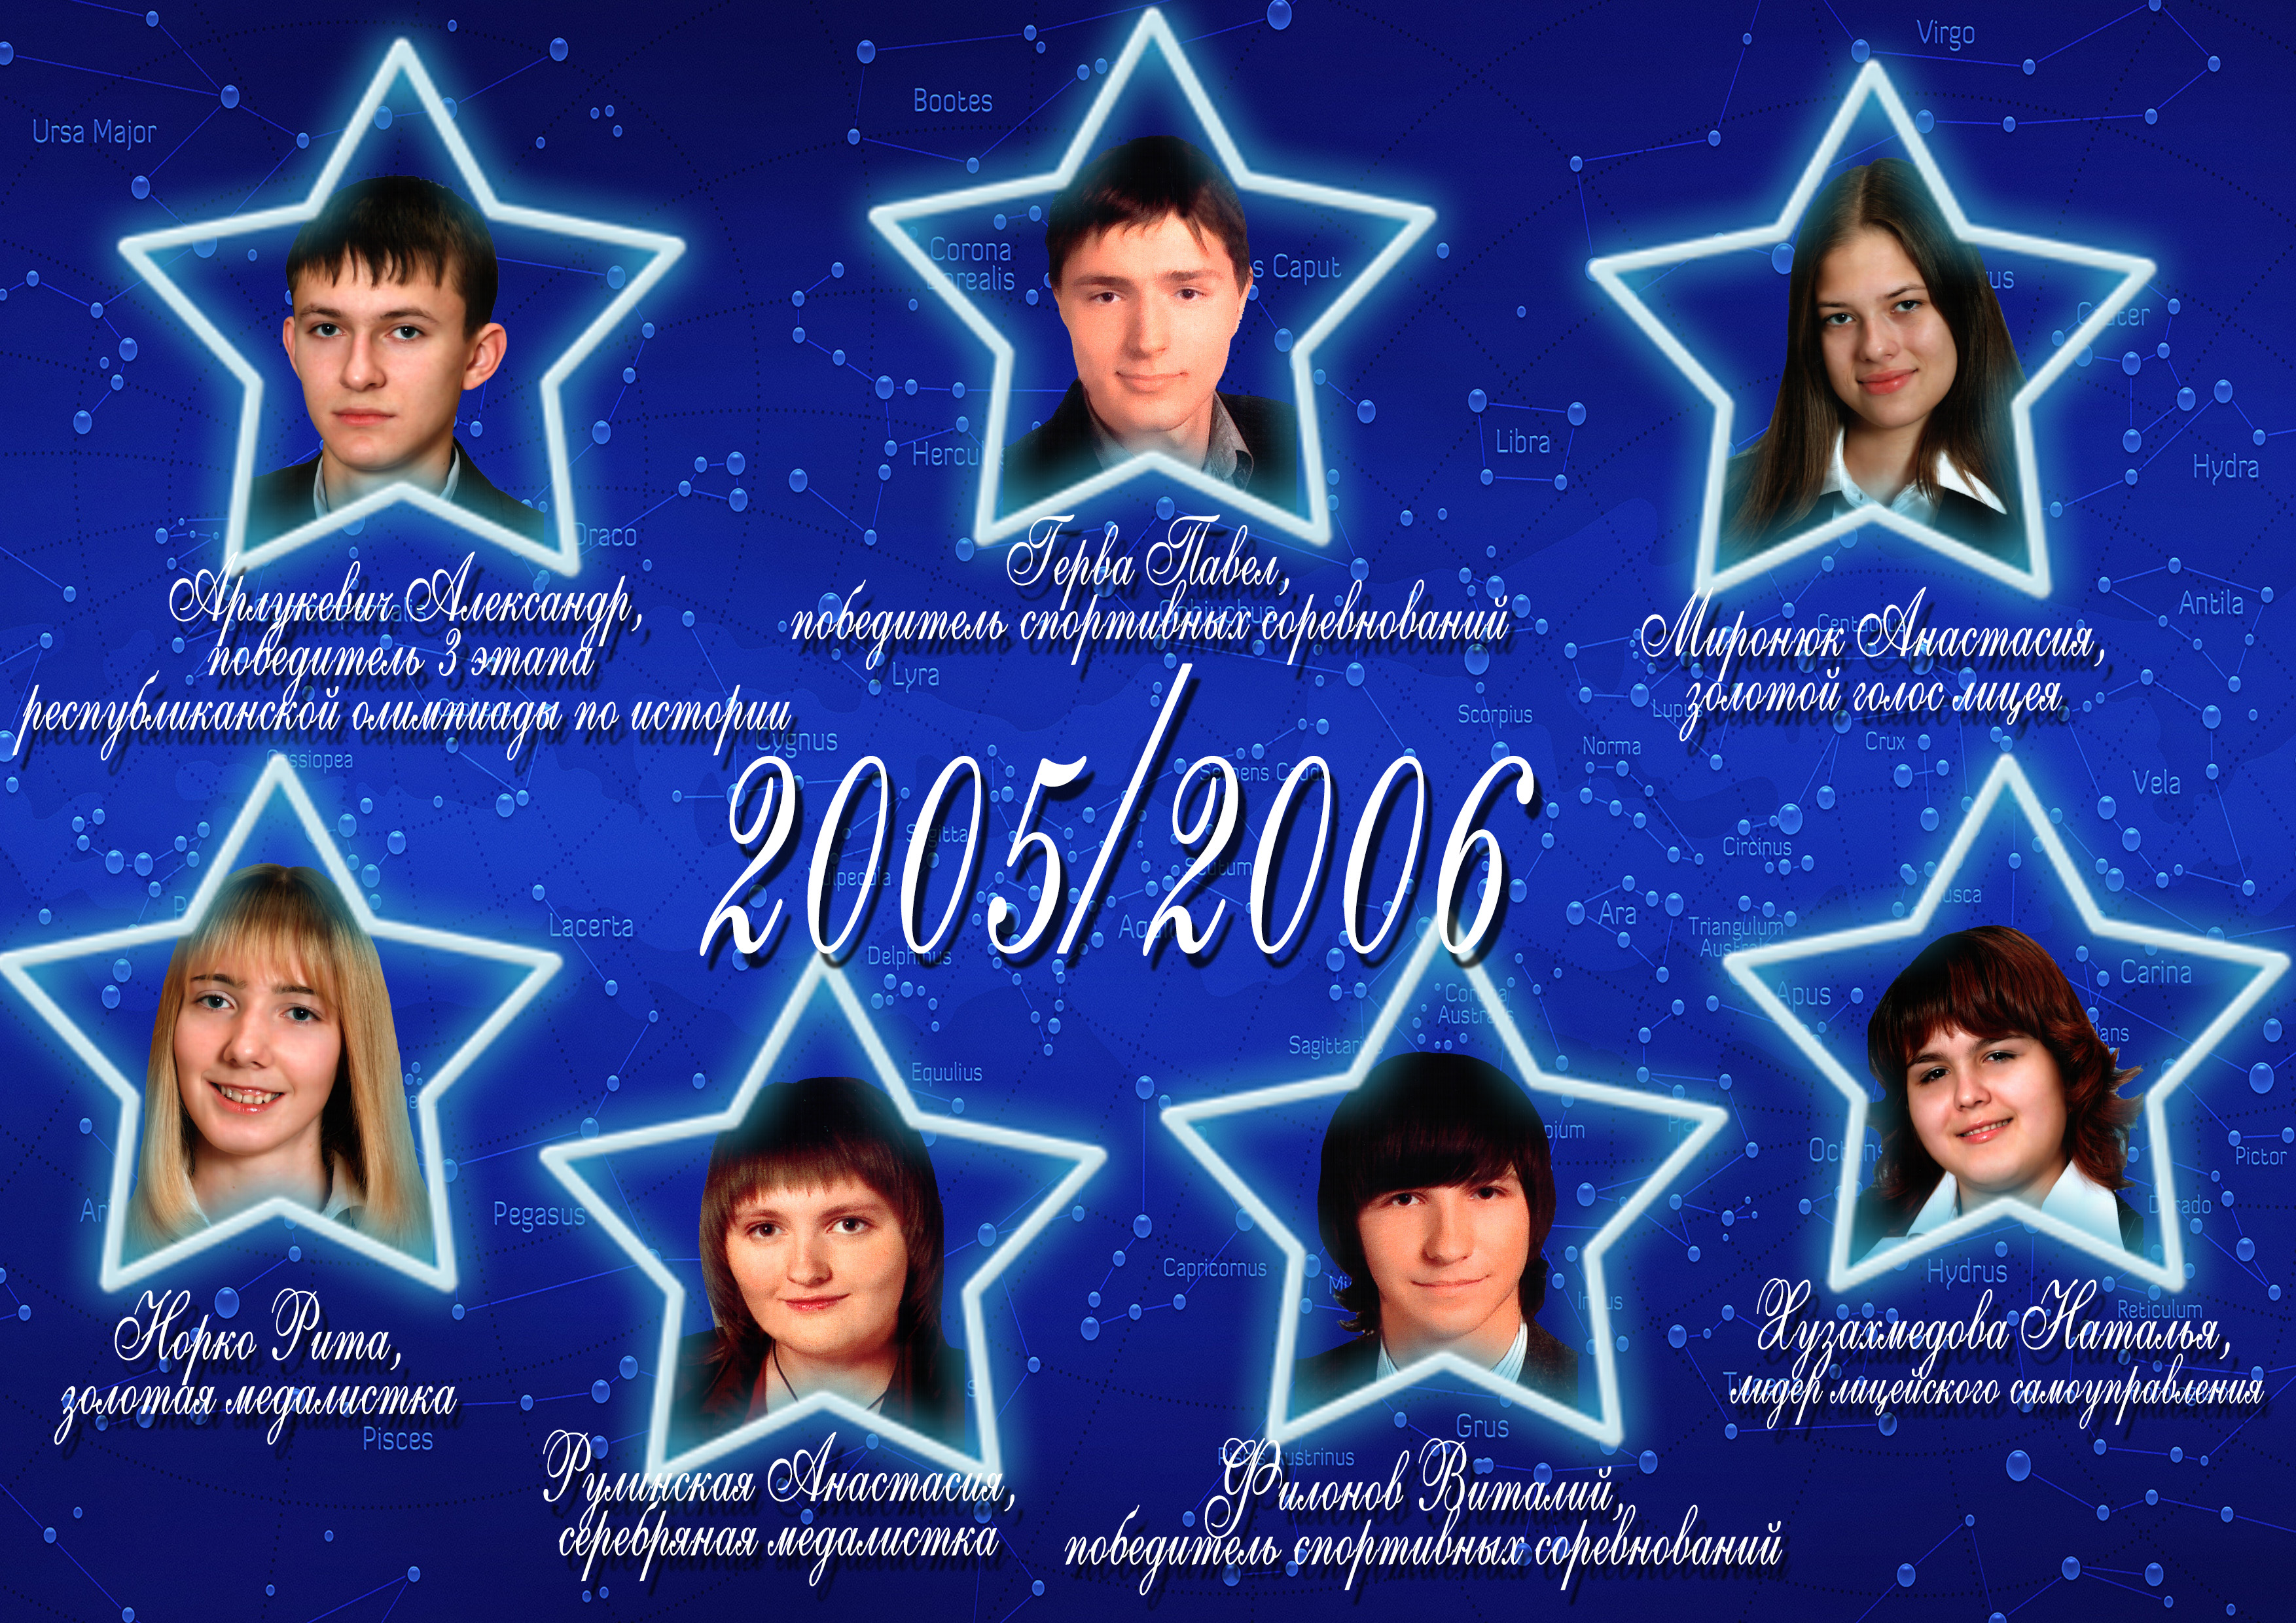 Созвездие лицея 2005/2006 учебного года